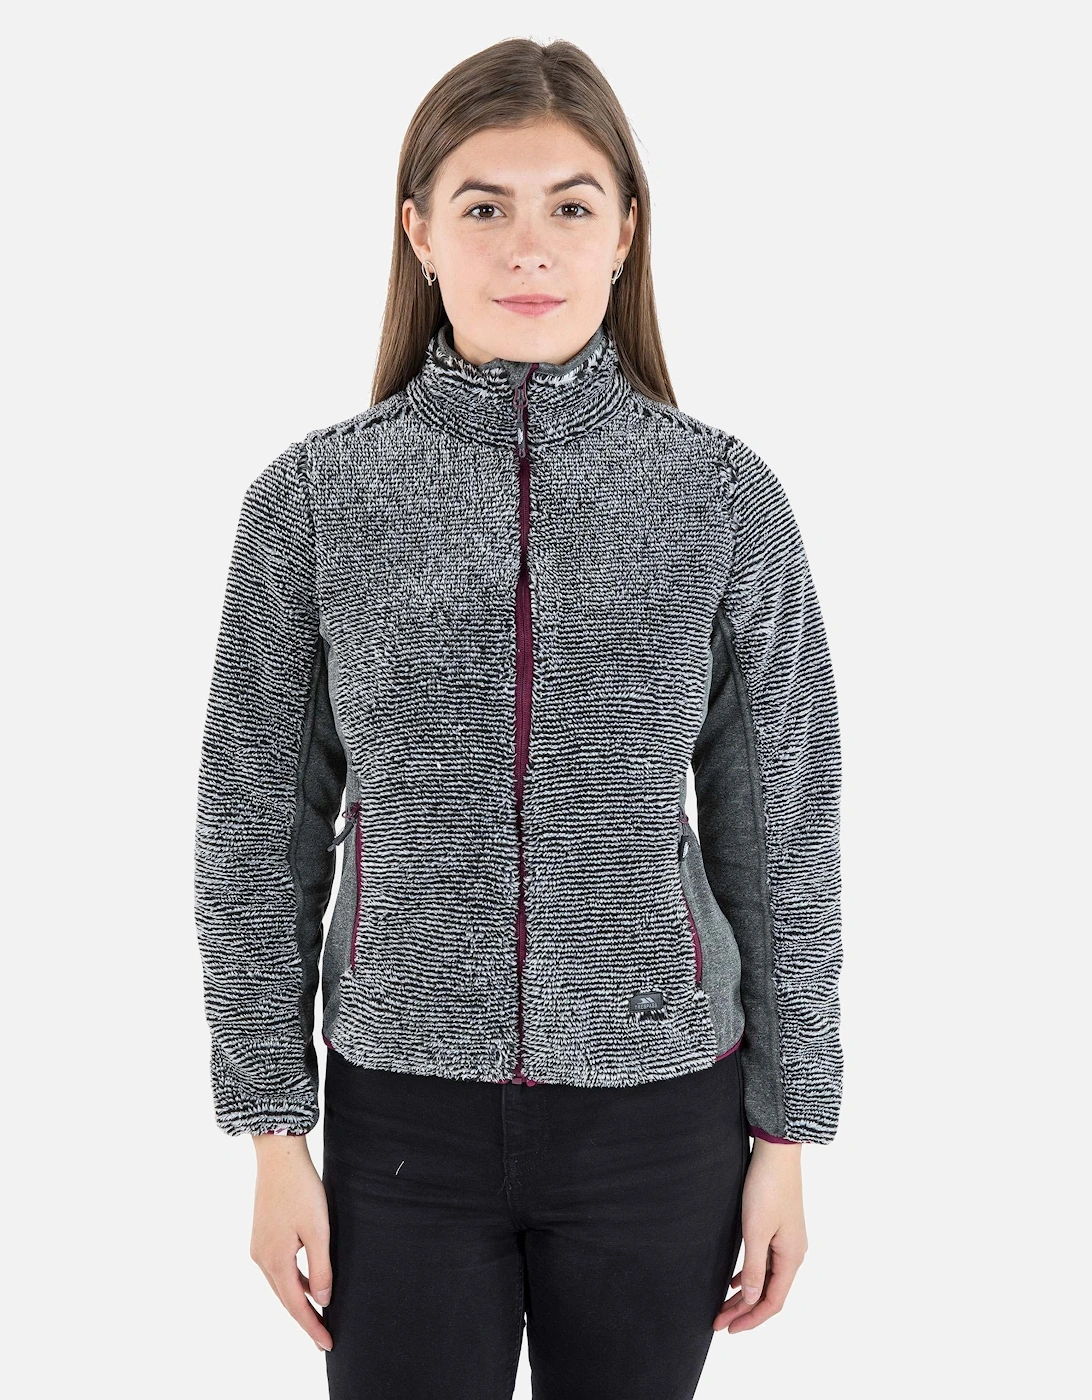 Womens/Ladies Muirhead Fleece Jacket